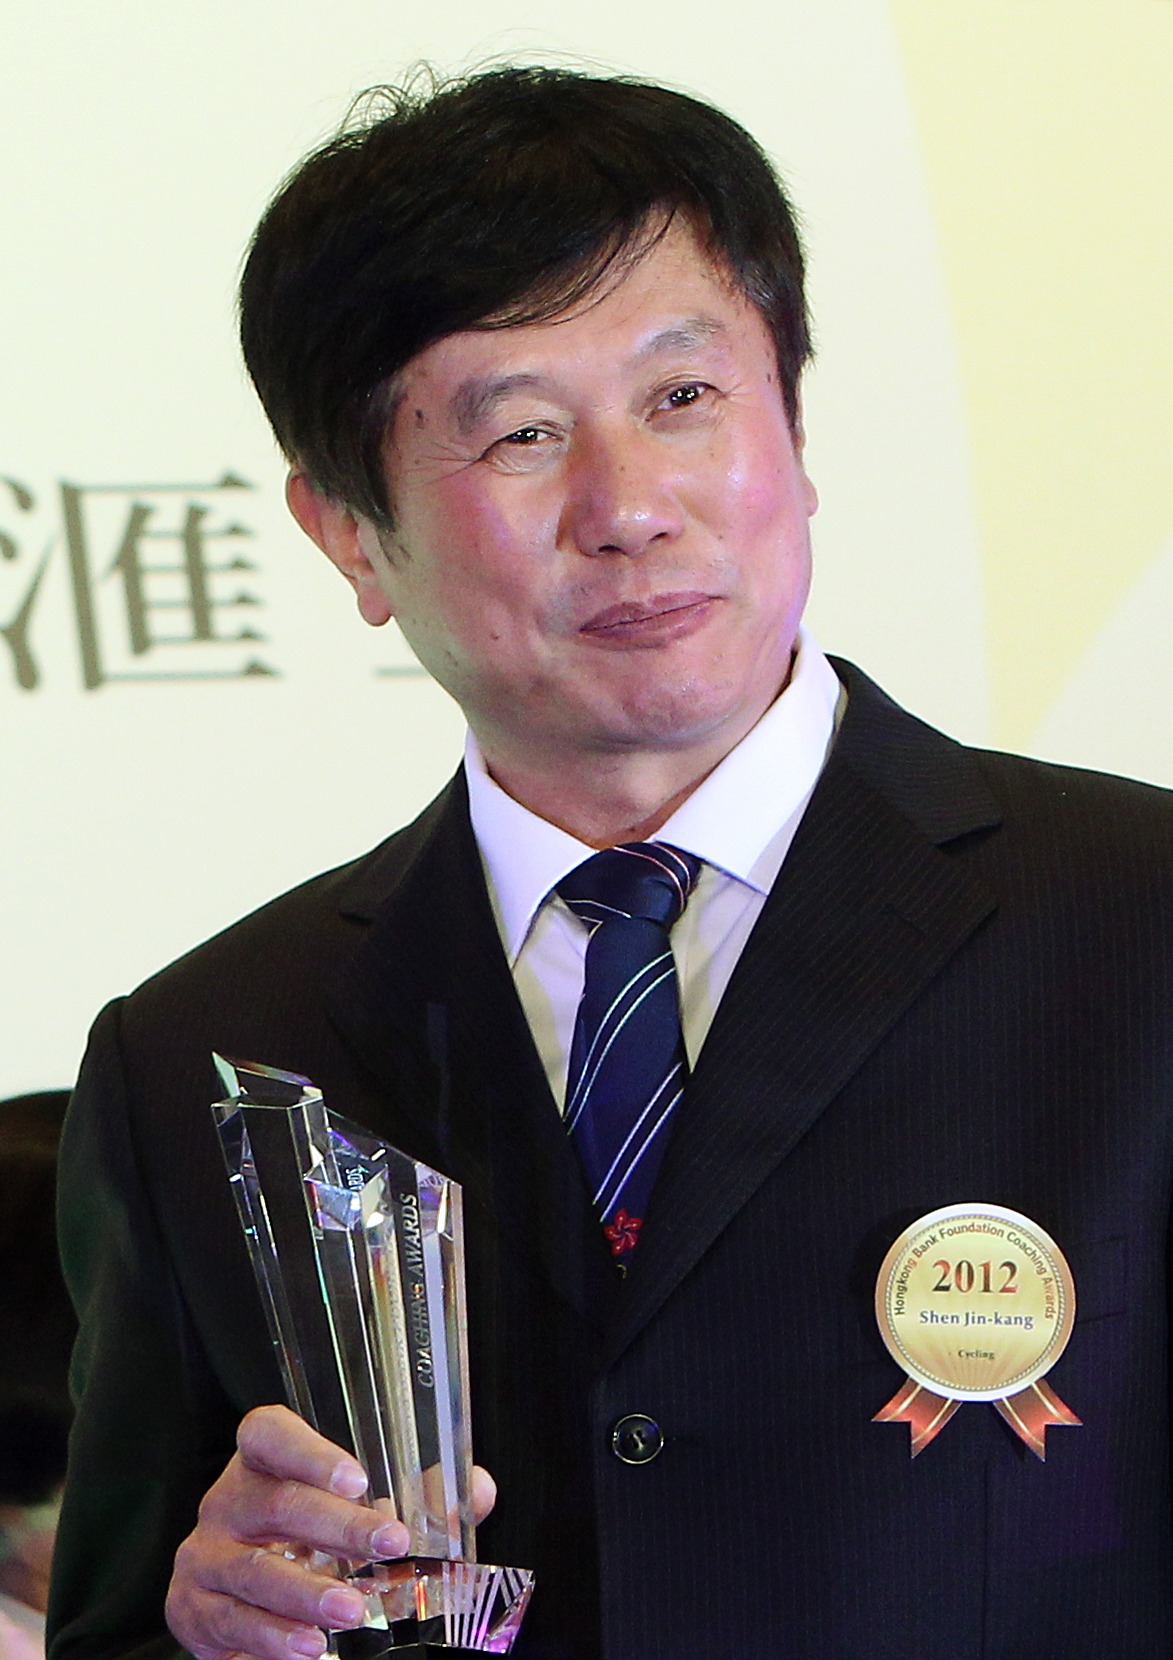 沈金康去年（2022年）獲特區政府頒發銀紫荊星章，表揚他對香港體壇貢獻。他說：「作為一名單車教練，我的工作是平凡的，培養運動員在國際賽場爭金奪銀，為香港爭光，是每位教練工作應該盡的責任。」（圖片來源：Getty）